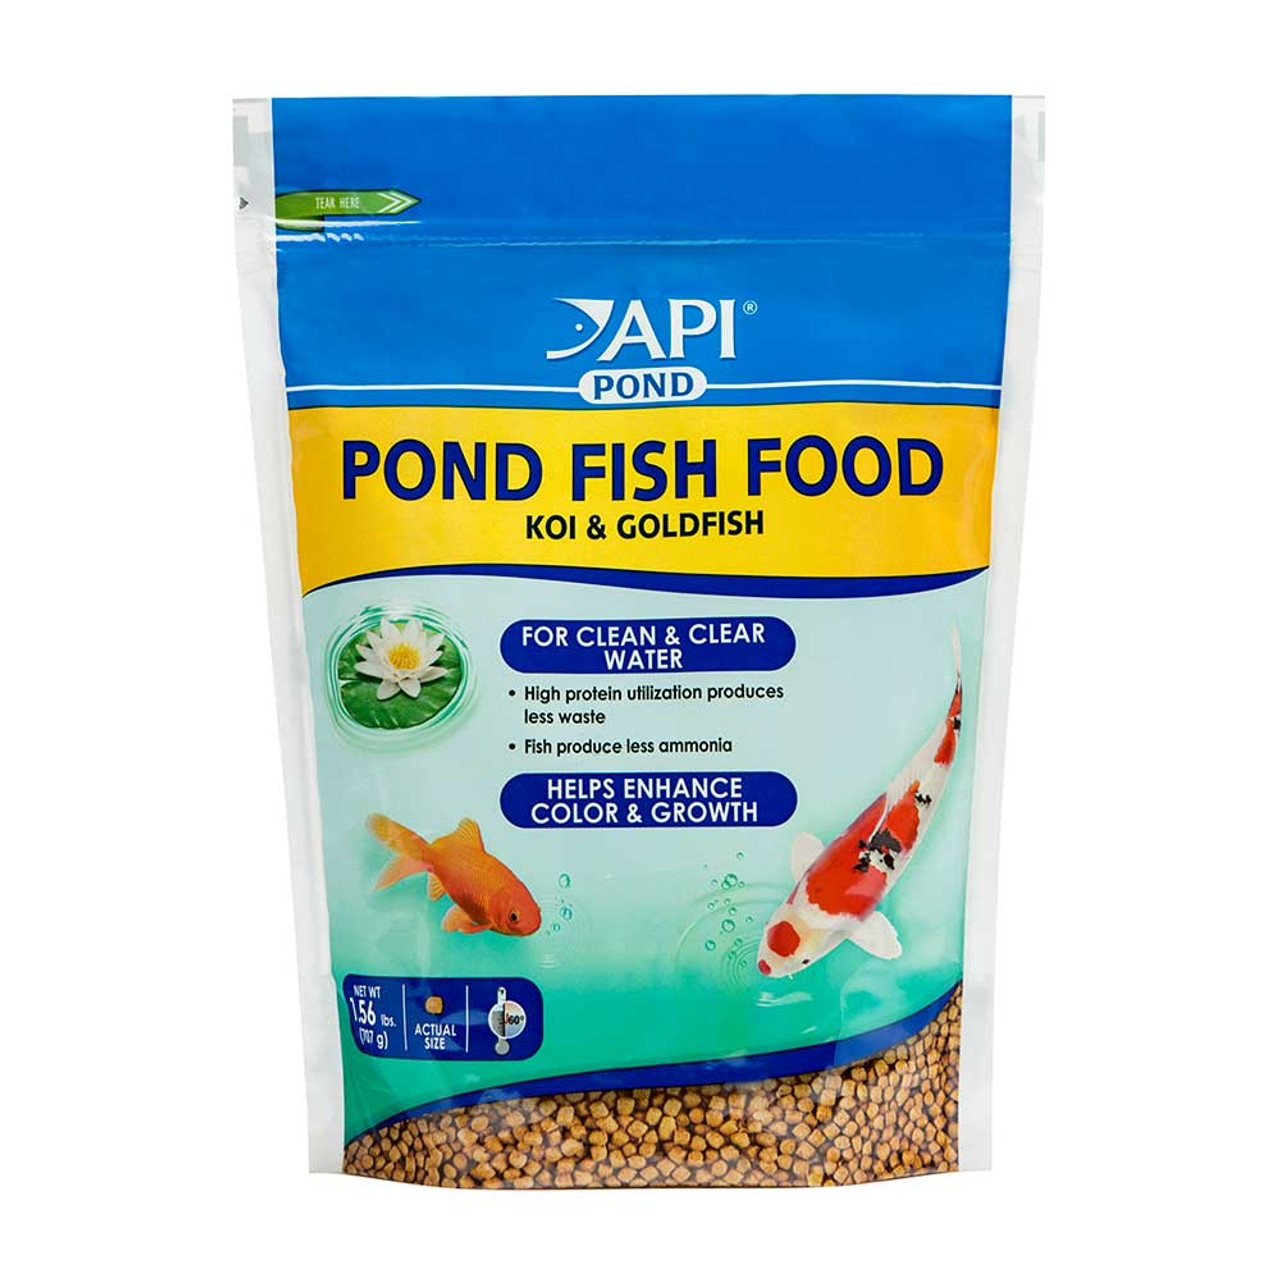 TETRA Pond Koi Growth High Protein Koi & Goldfish Food, 4.85-lb